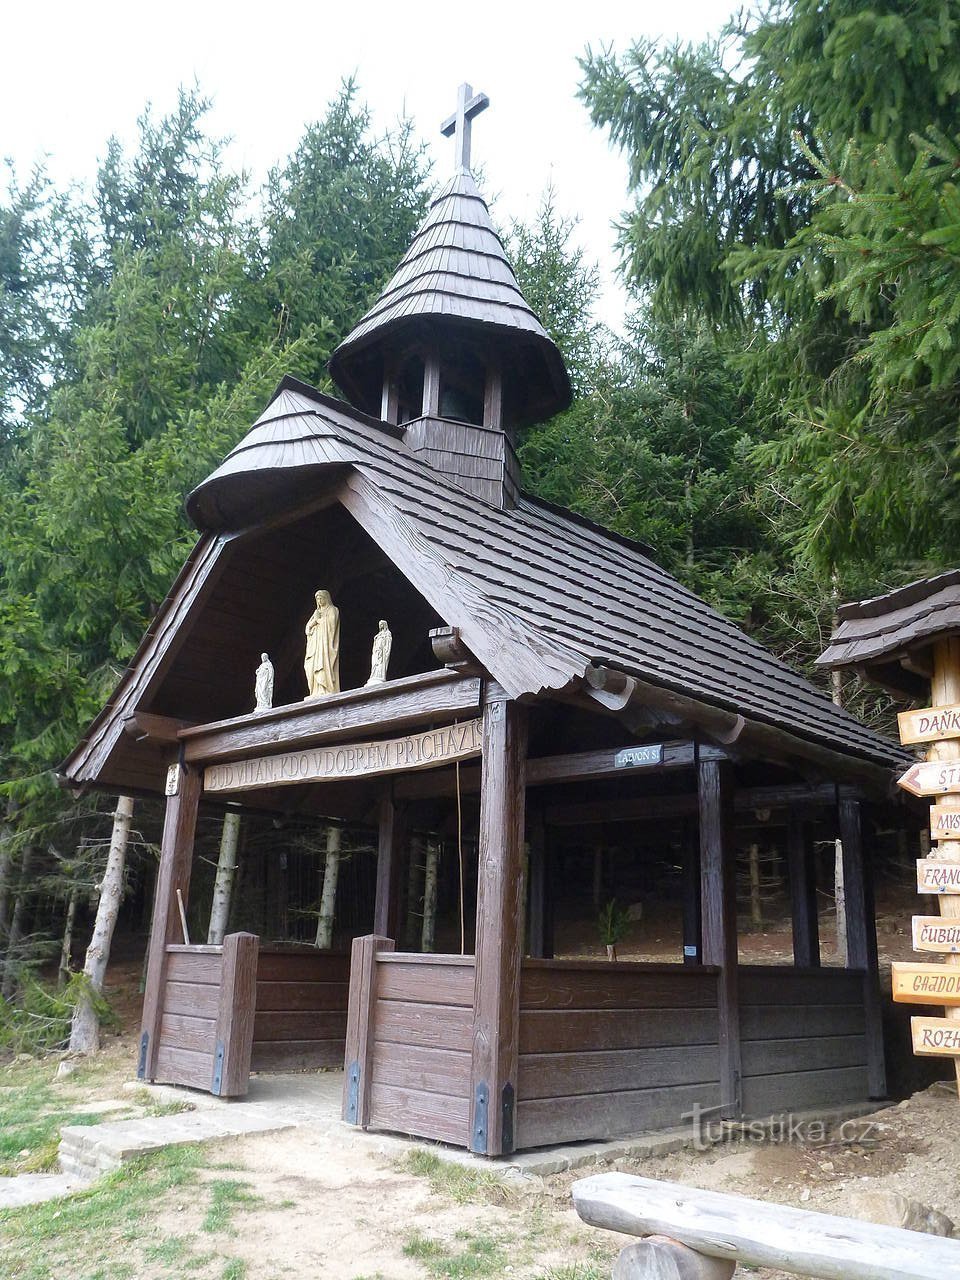 Uma capela de madeira com sino e incomum